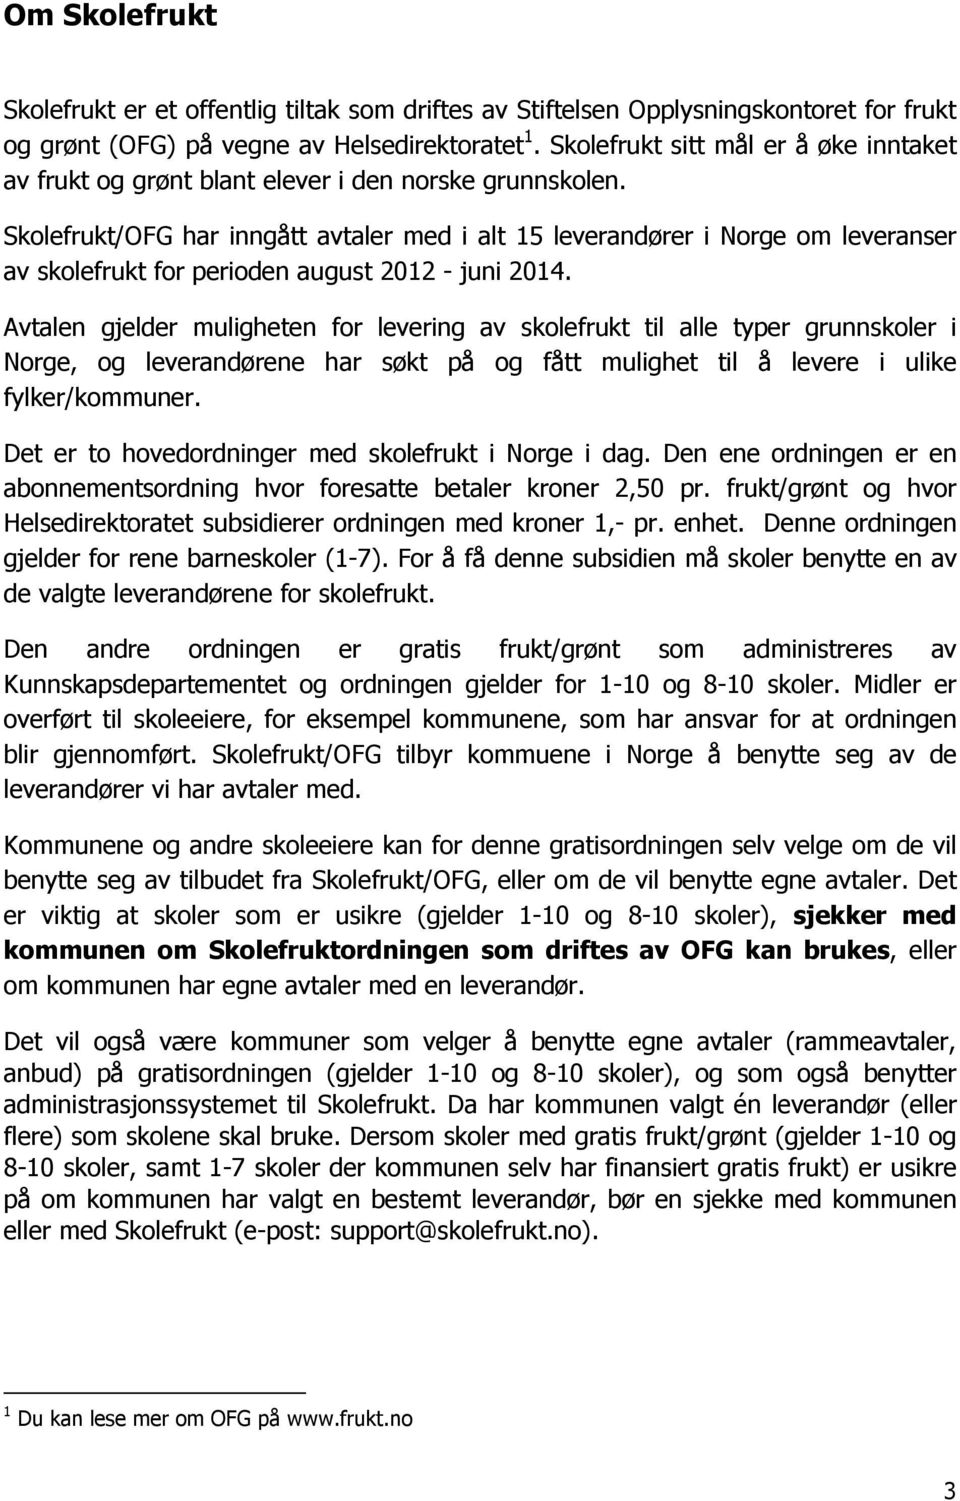 Skolefrukt/OFG har inngått avtaler med i alt 15 leverandører i Norge om leveranser av skolefrukt for perioden august 2012 - juni 2014.